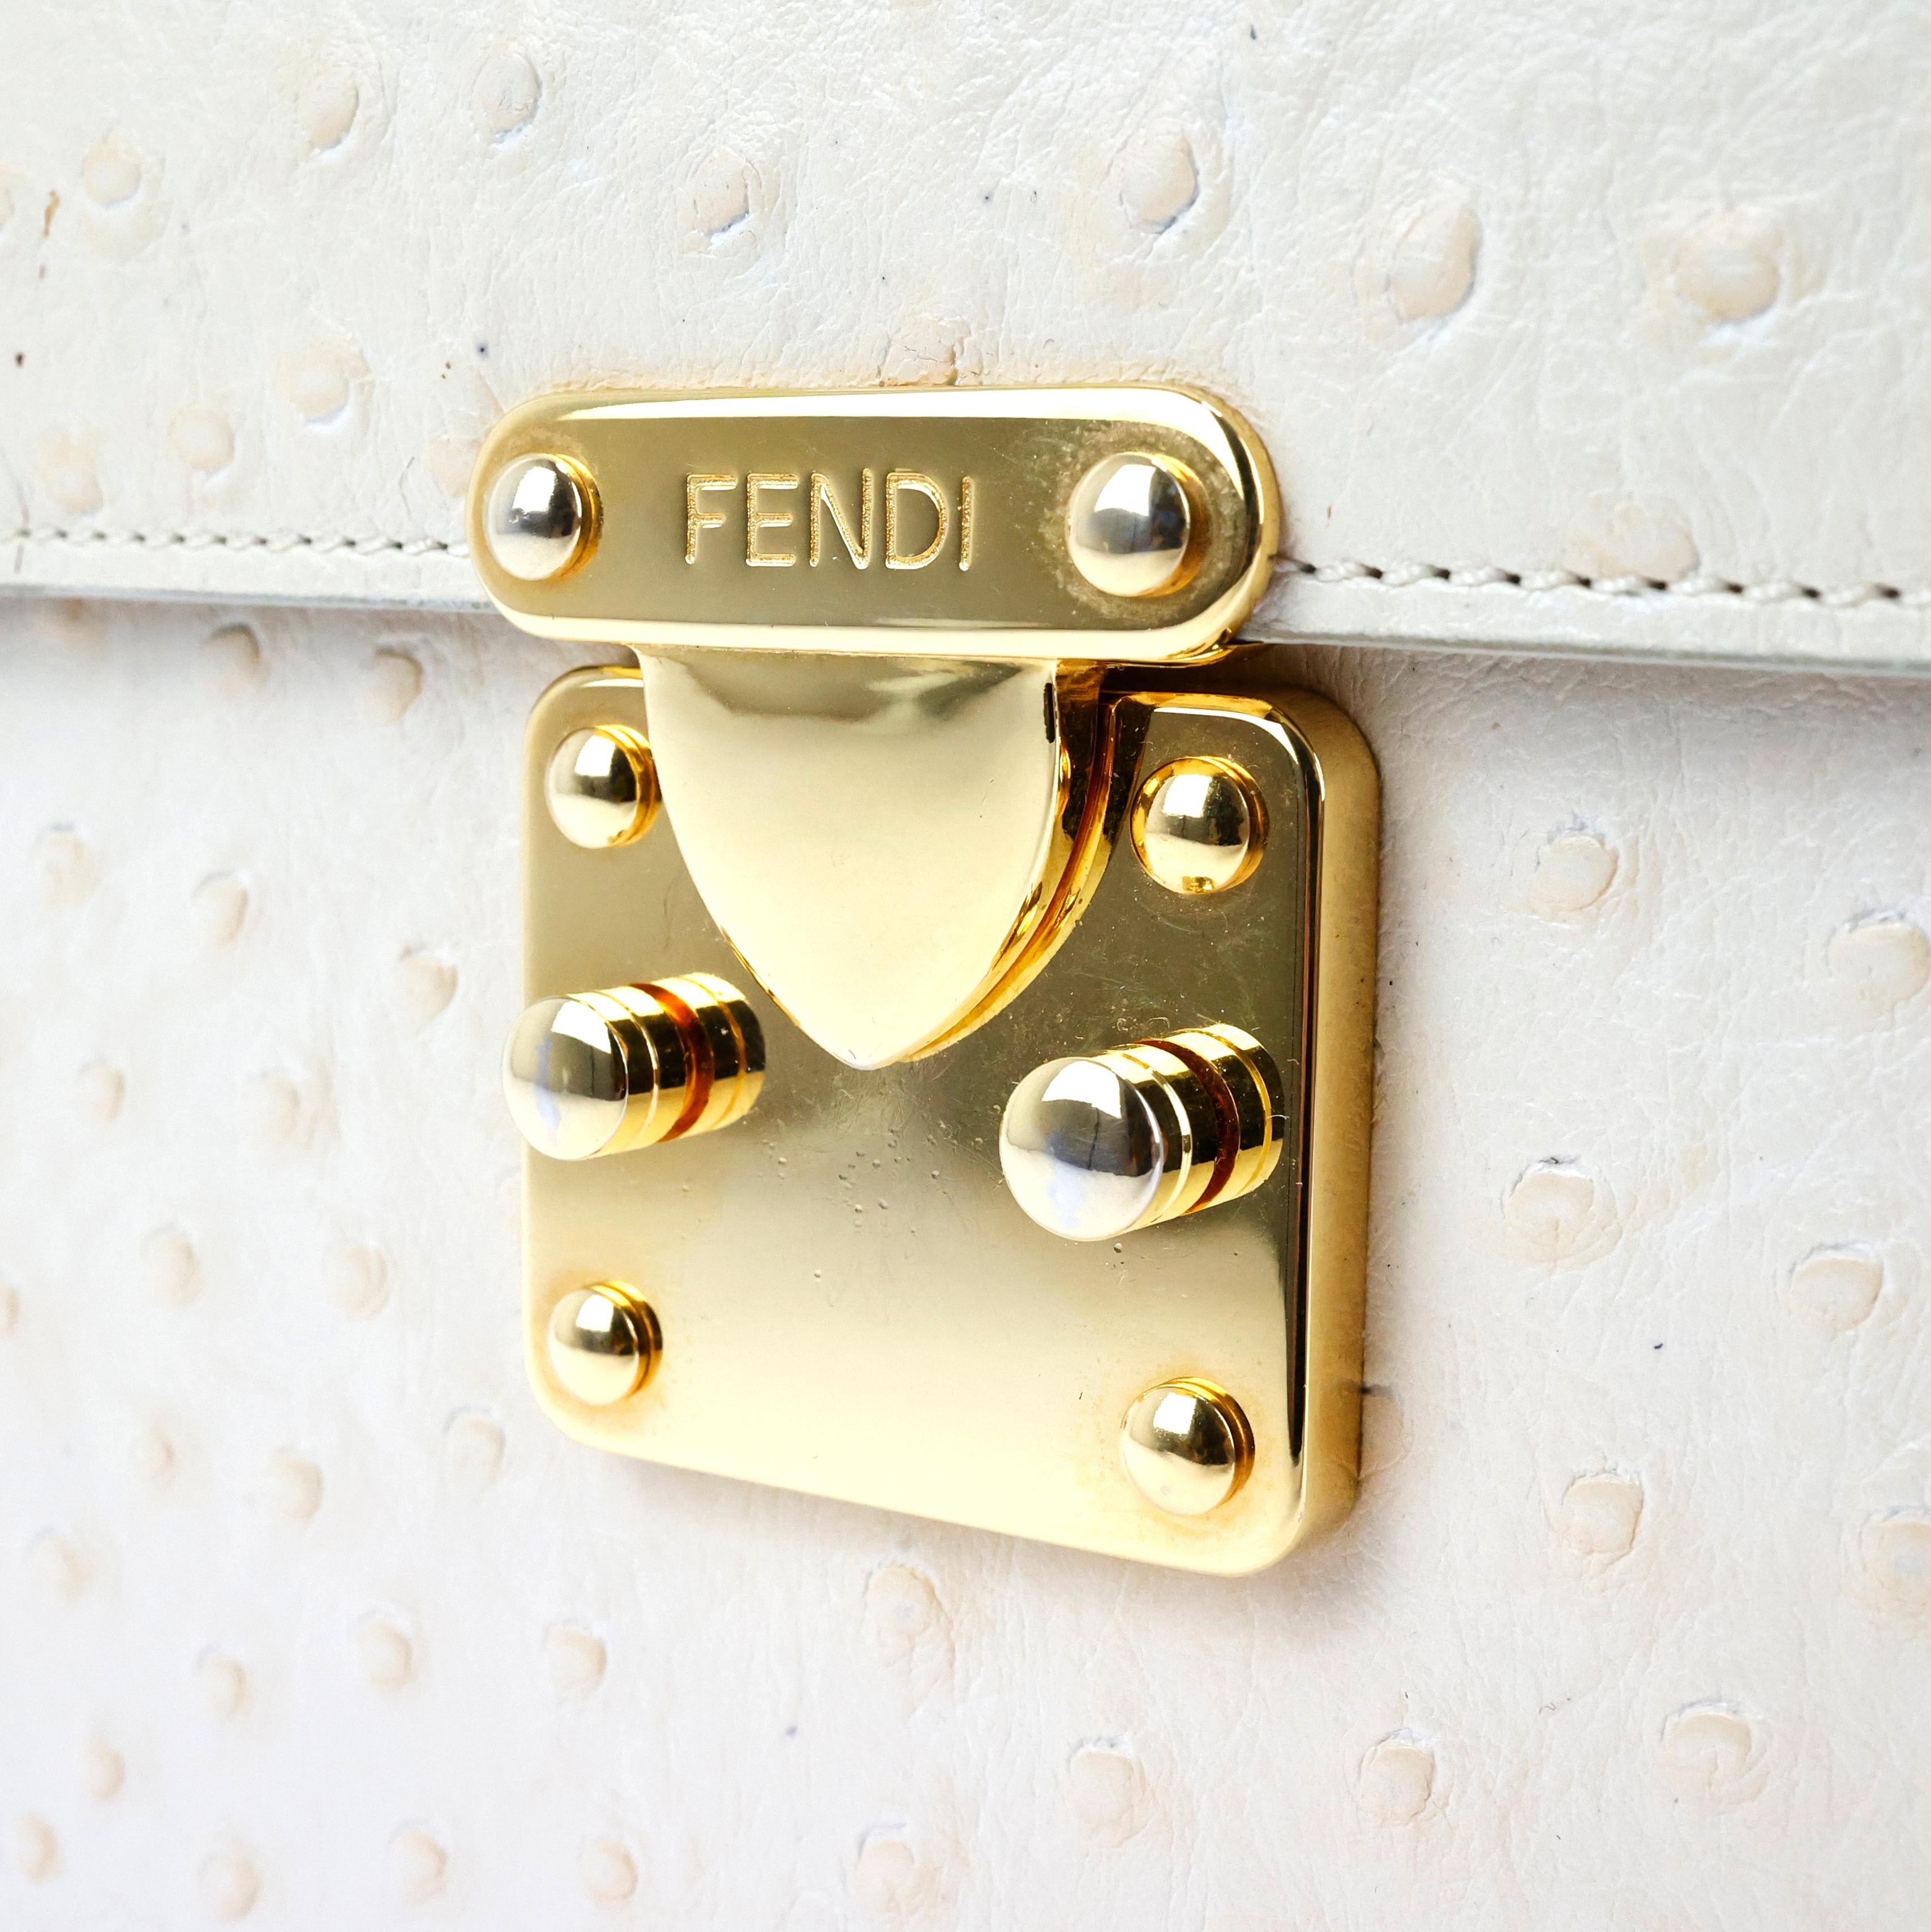 Fendi Ostrich Handbag In Good Condition For Sale In Bressanone, IT